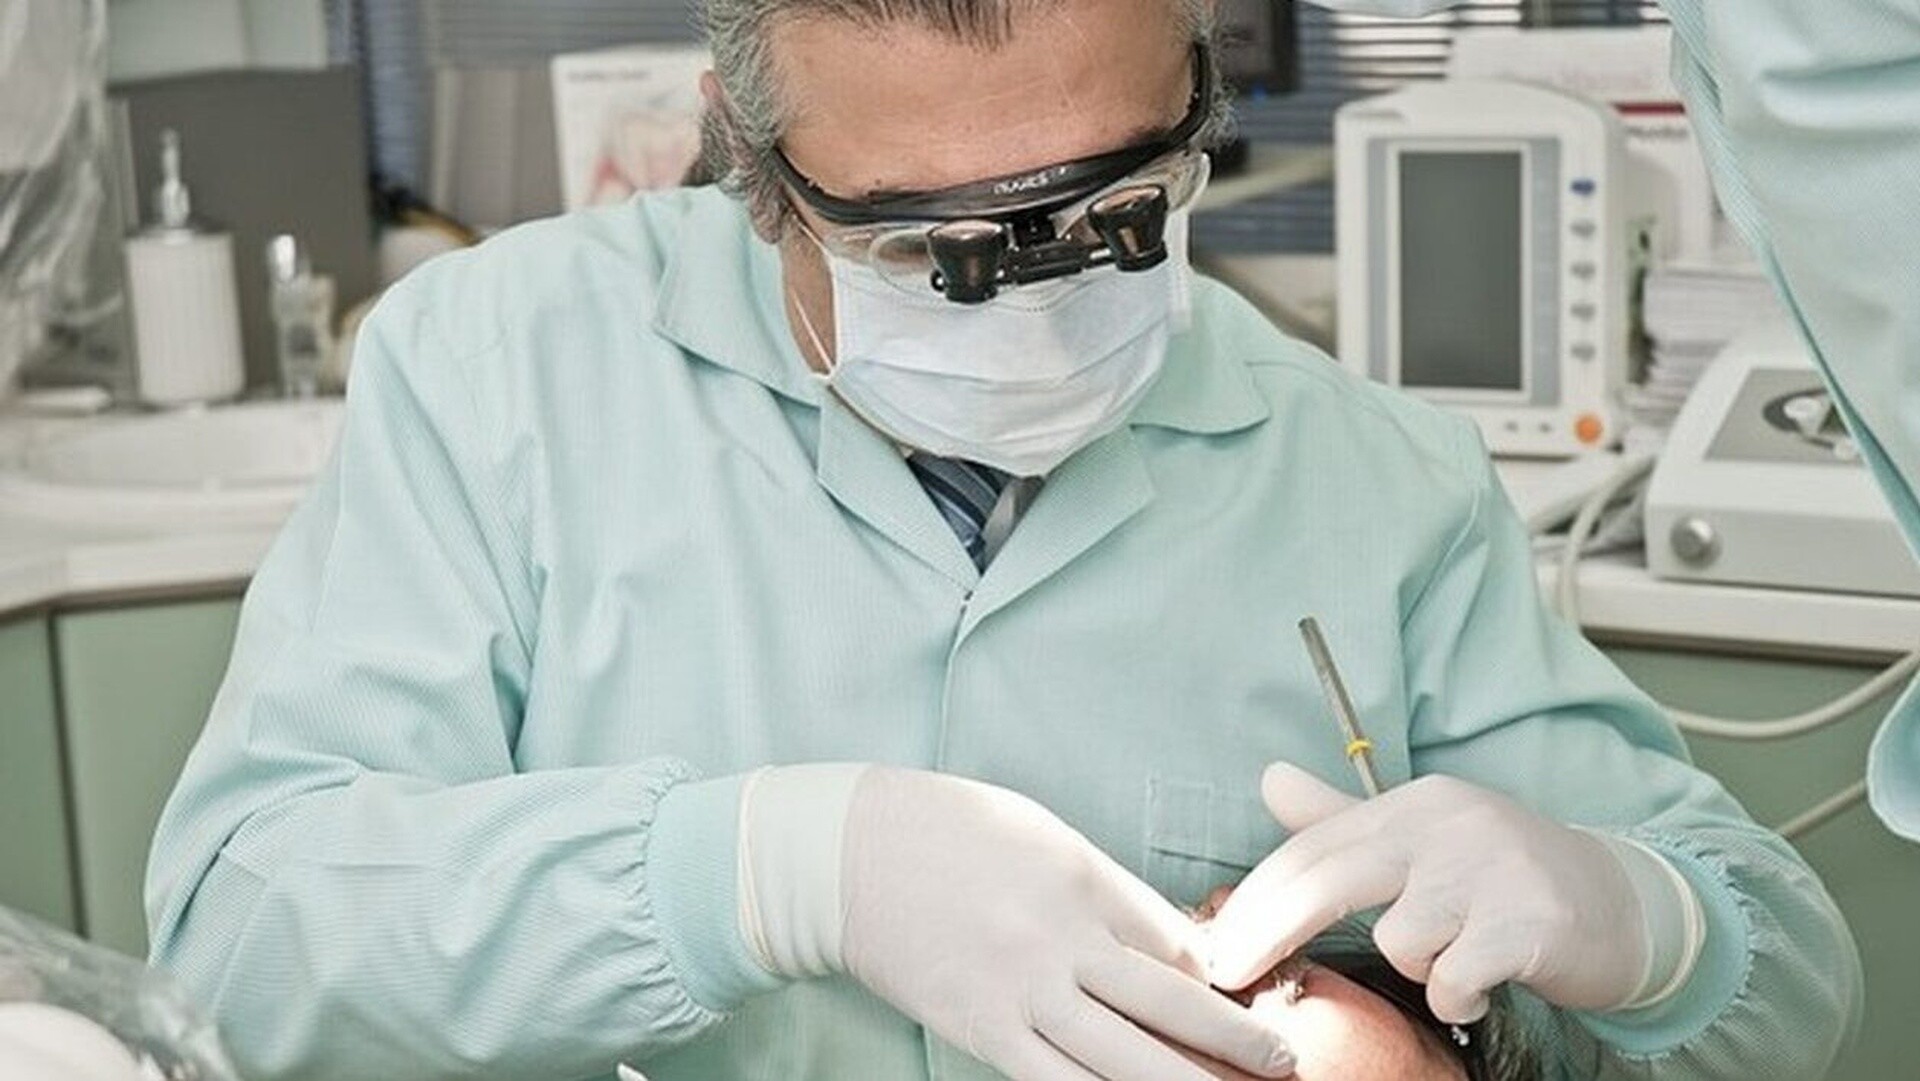 Ηλιούπολη: Οκτώ μήνες με αναστολή στον «μαϊμού» οδοντοτεχνίτη που παρίστανε τον οδοντίατρο